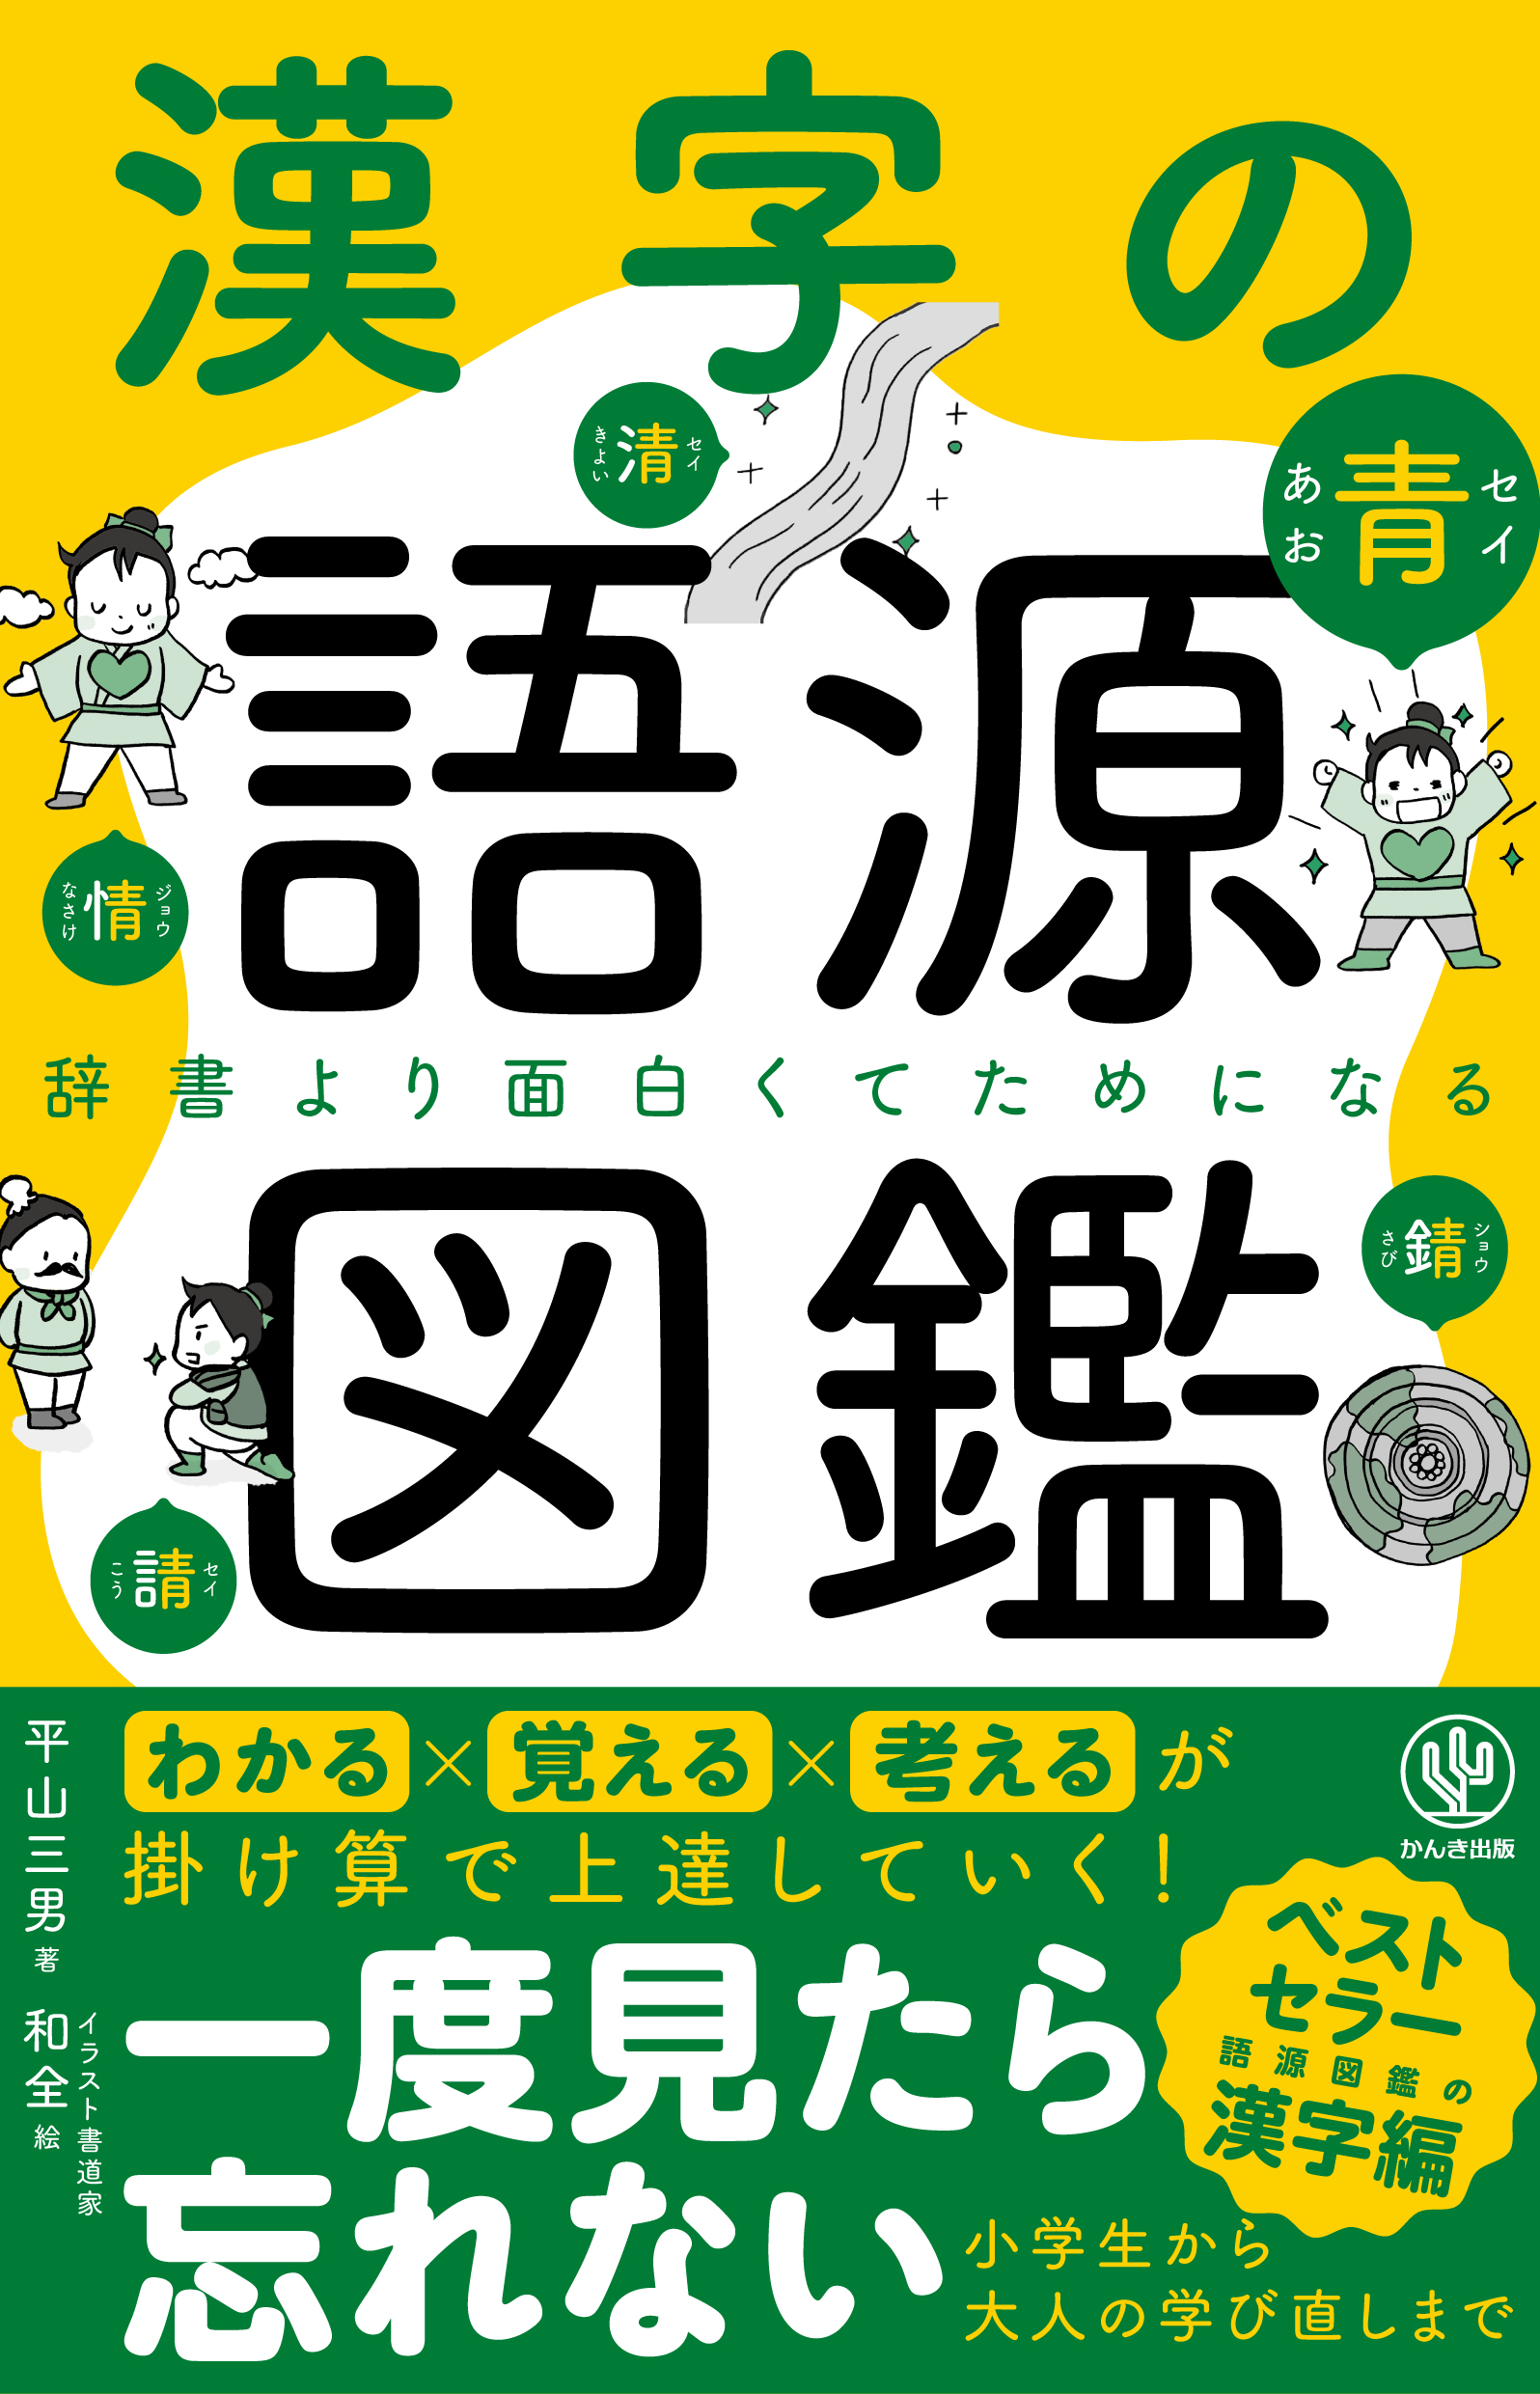 累計100万部を突破した大人気 語源図鑑 シリーズから ついに 漢字の語源図鑑 が登場 イラストでわかりやすく簡単に 知らない漢字も芋づる式に覚えられます Newscast